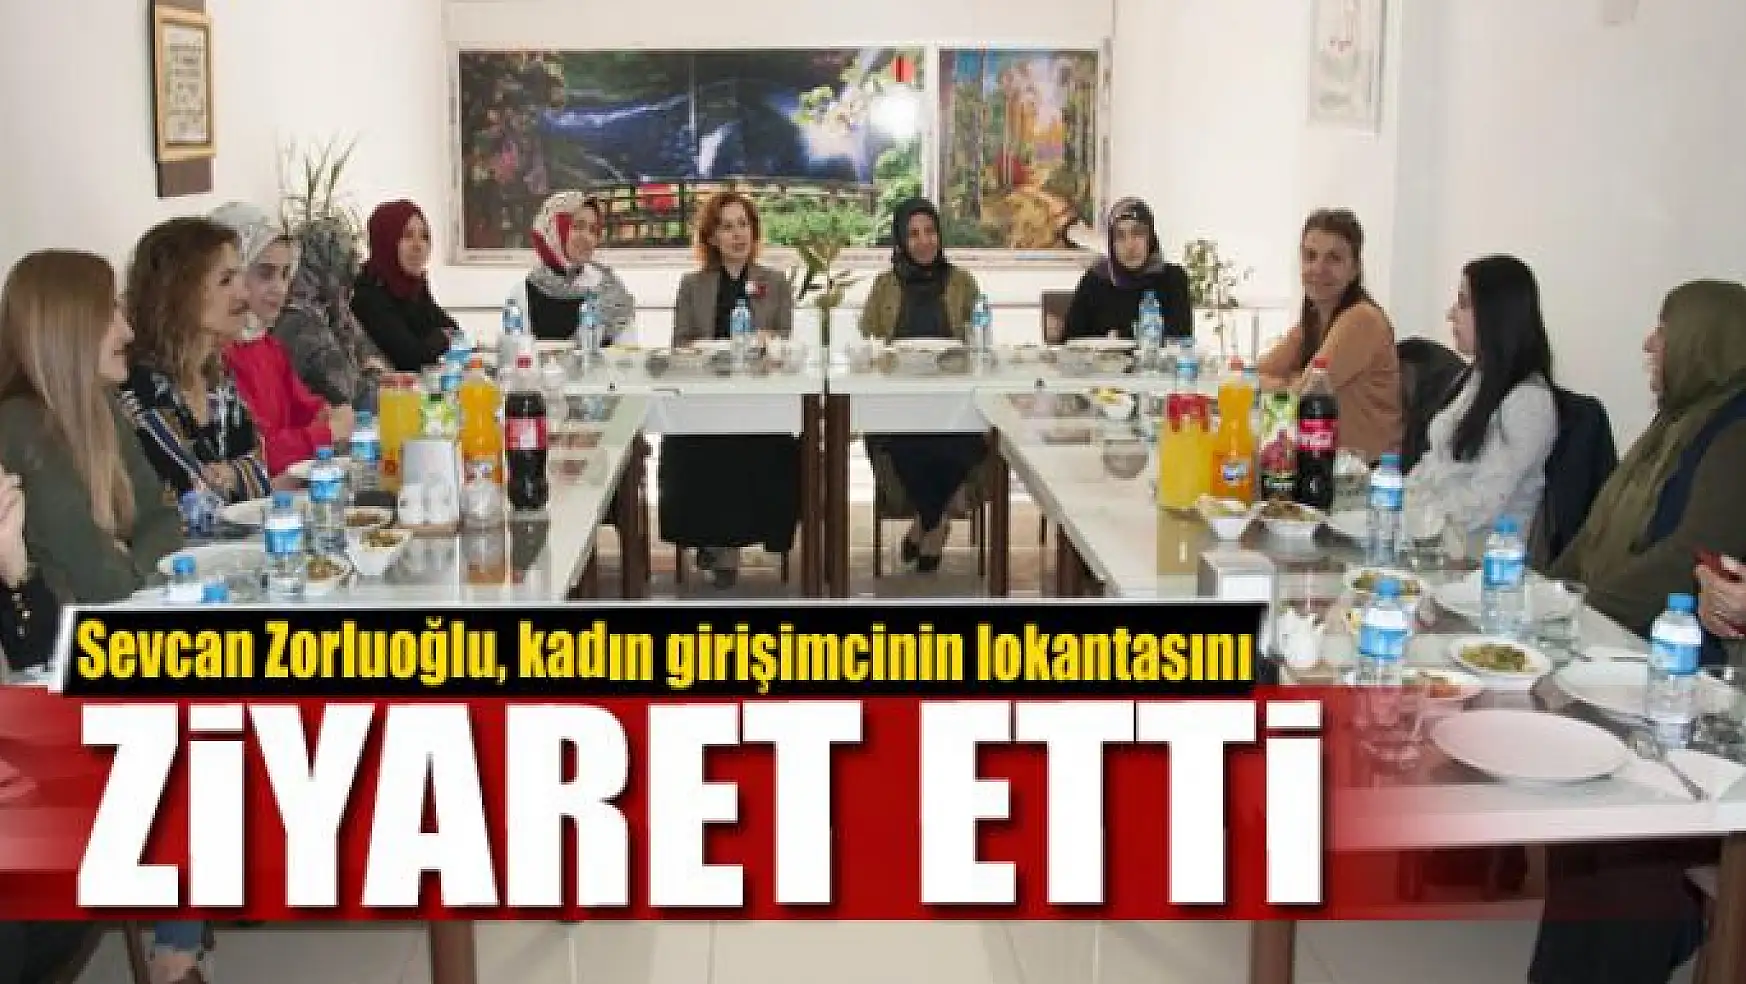 Sevcan Zorluoğlu, kadın girişimcinin lokantasını ziyaret etti 